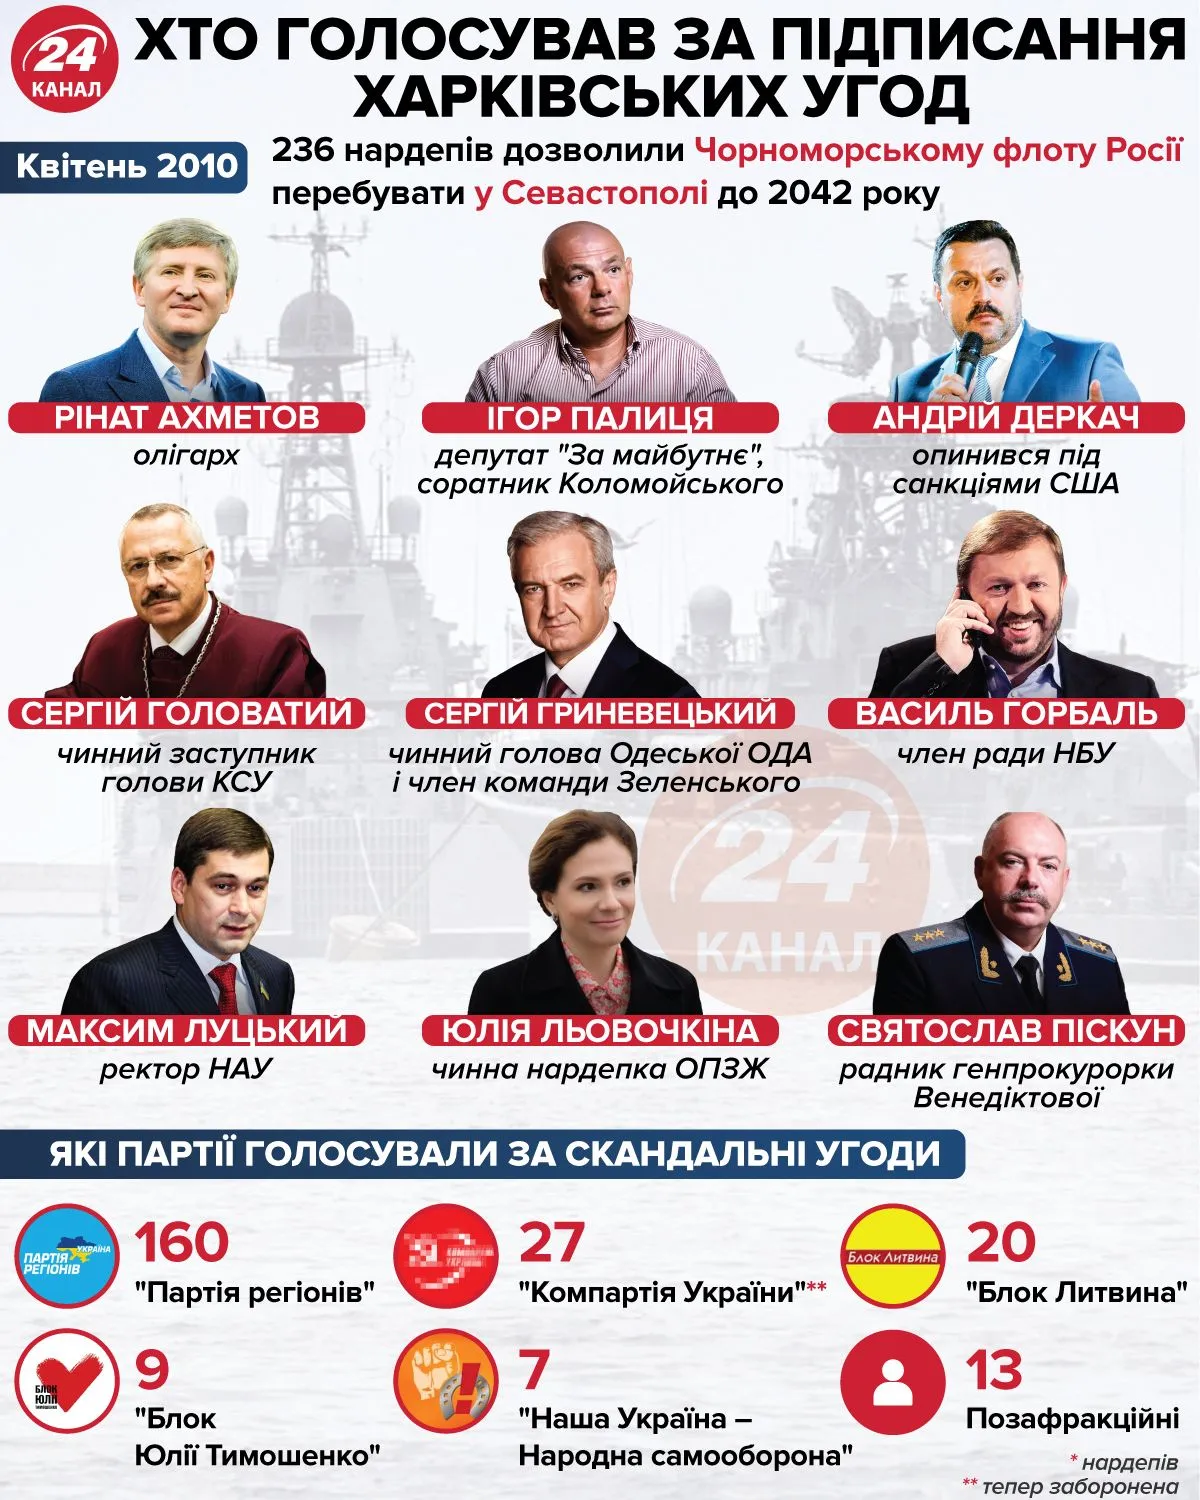 Депутати, які голосували за підписання харківських угод / Інфографіка 24 каналу